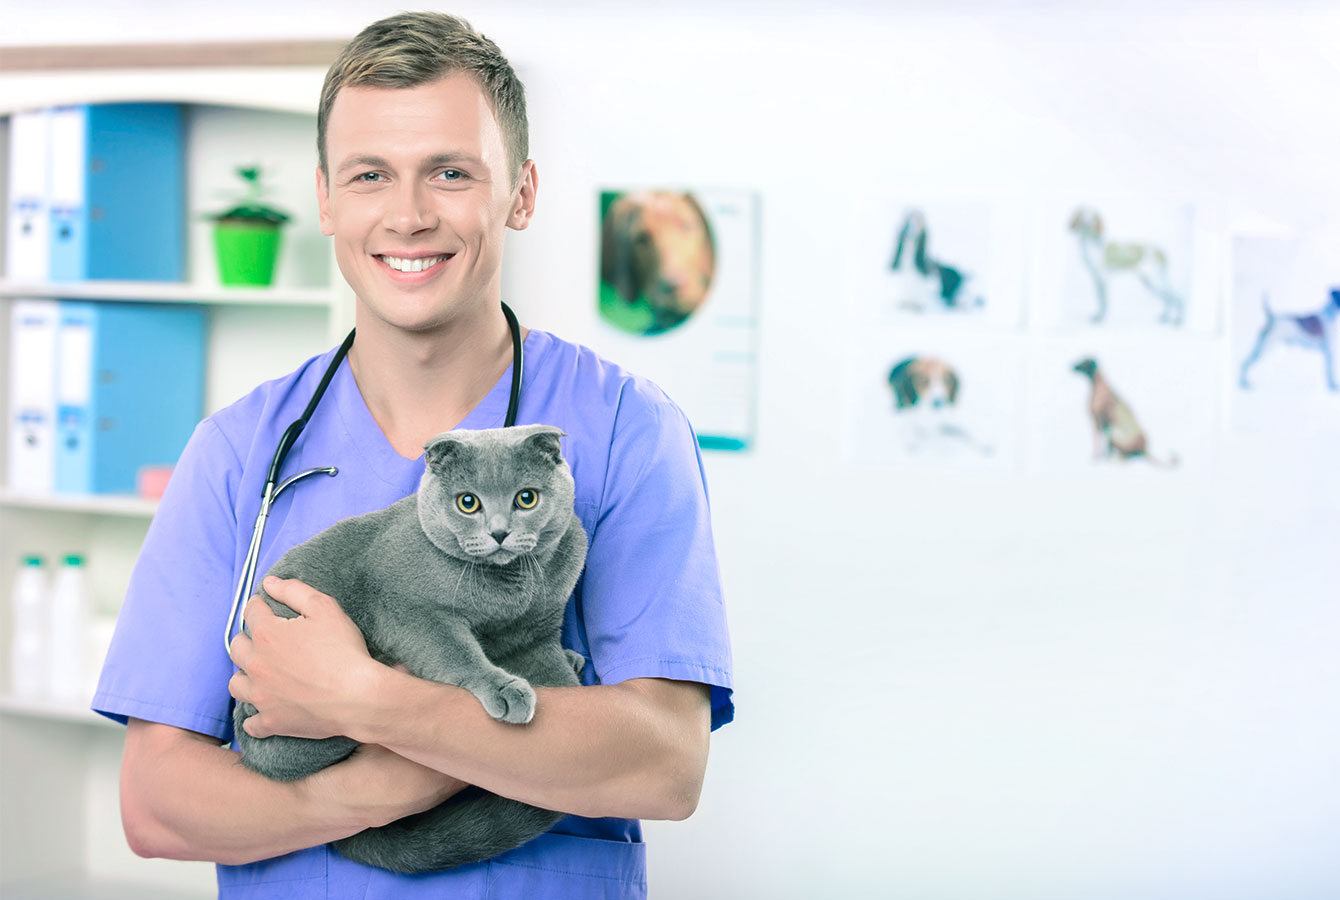 Moški veterinar z mačko, katere lastniki so rezervirali storitev z rezervacijskim sistemom Planfy.